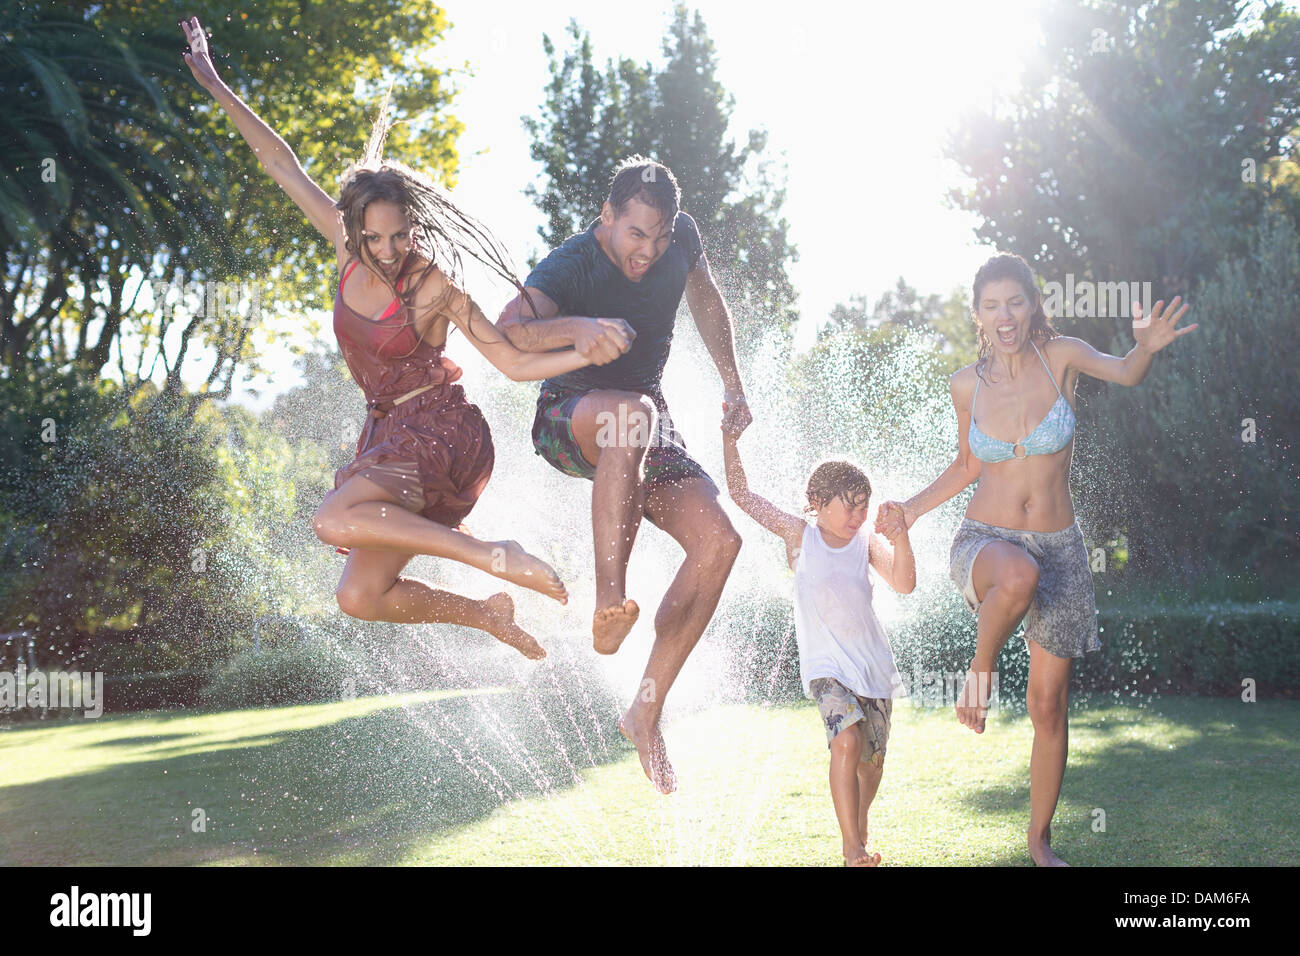 Family jumping en réseau sprinkleur Banque D'Images